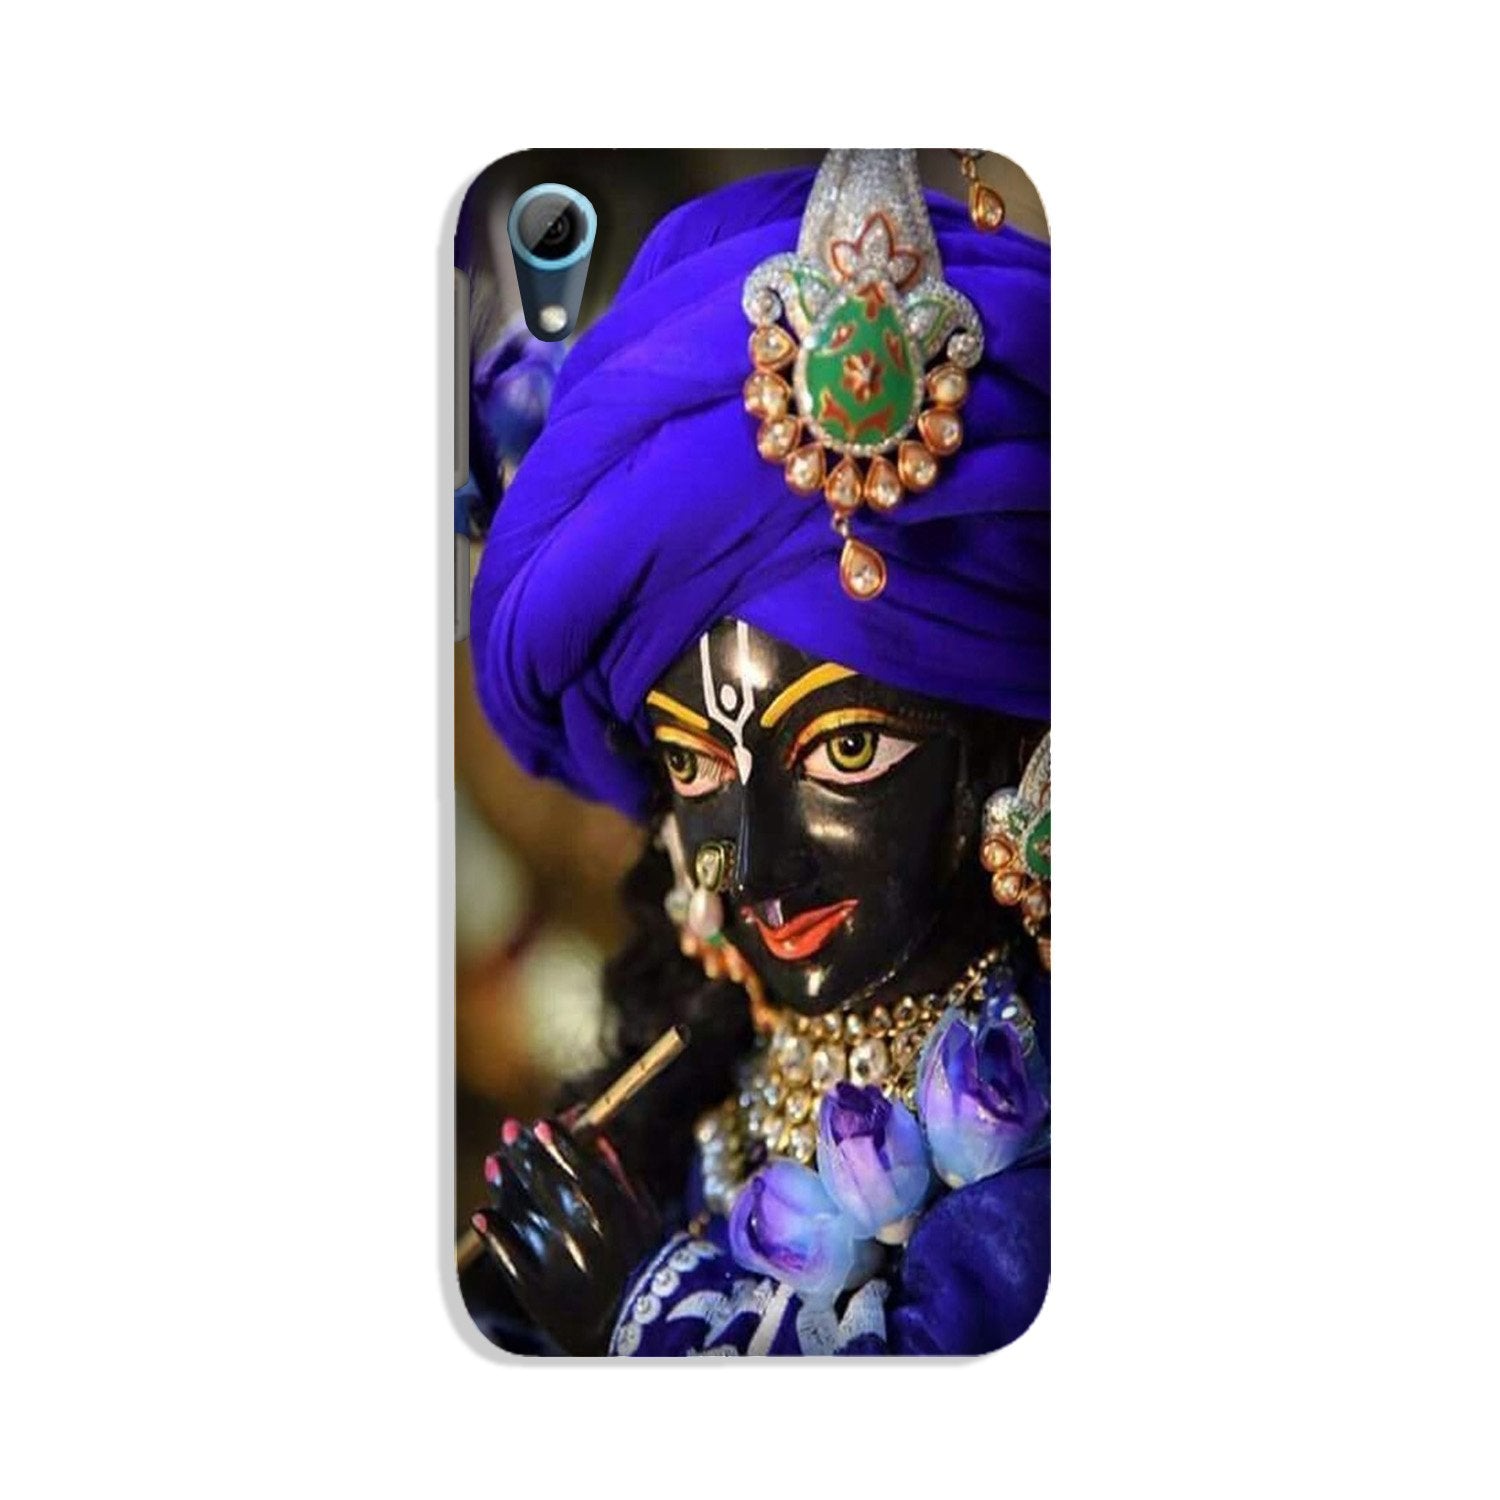 Lord Krishna4 Case for HTC Desire 826